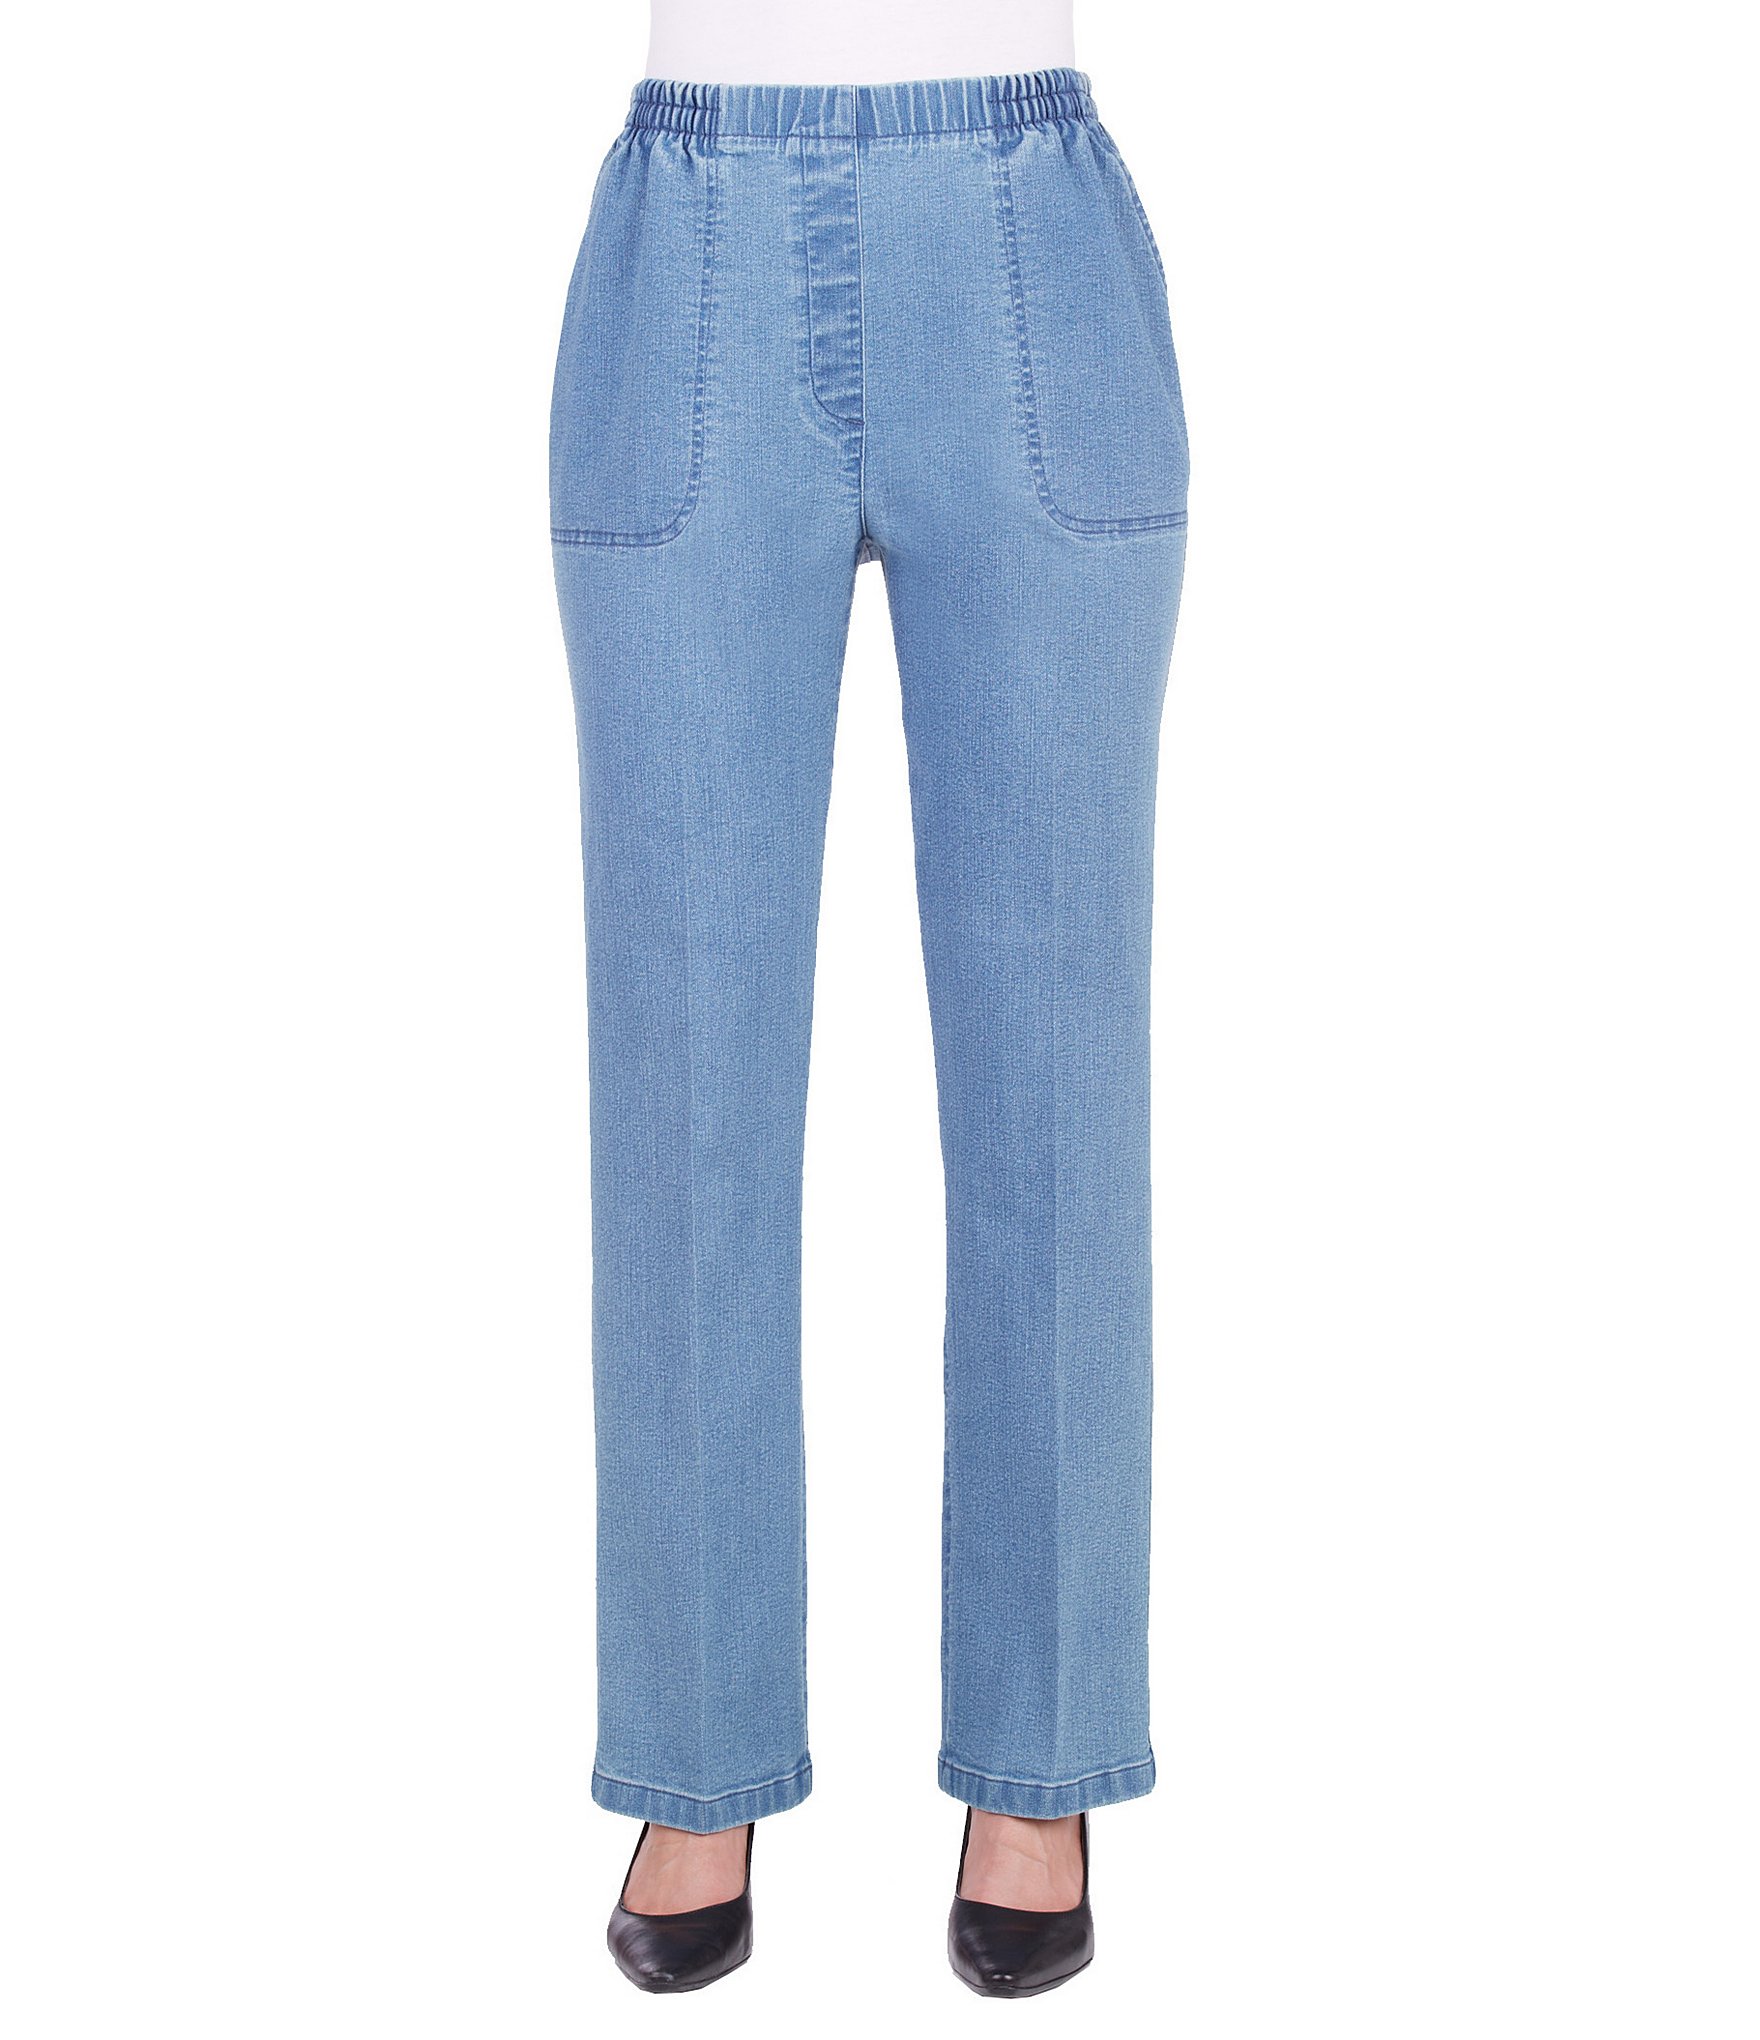 Allison Daley Blue Women's Jeans & Denim | Dillards